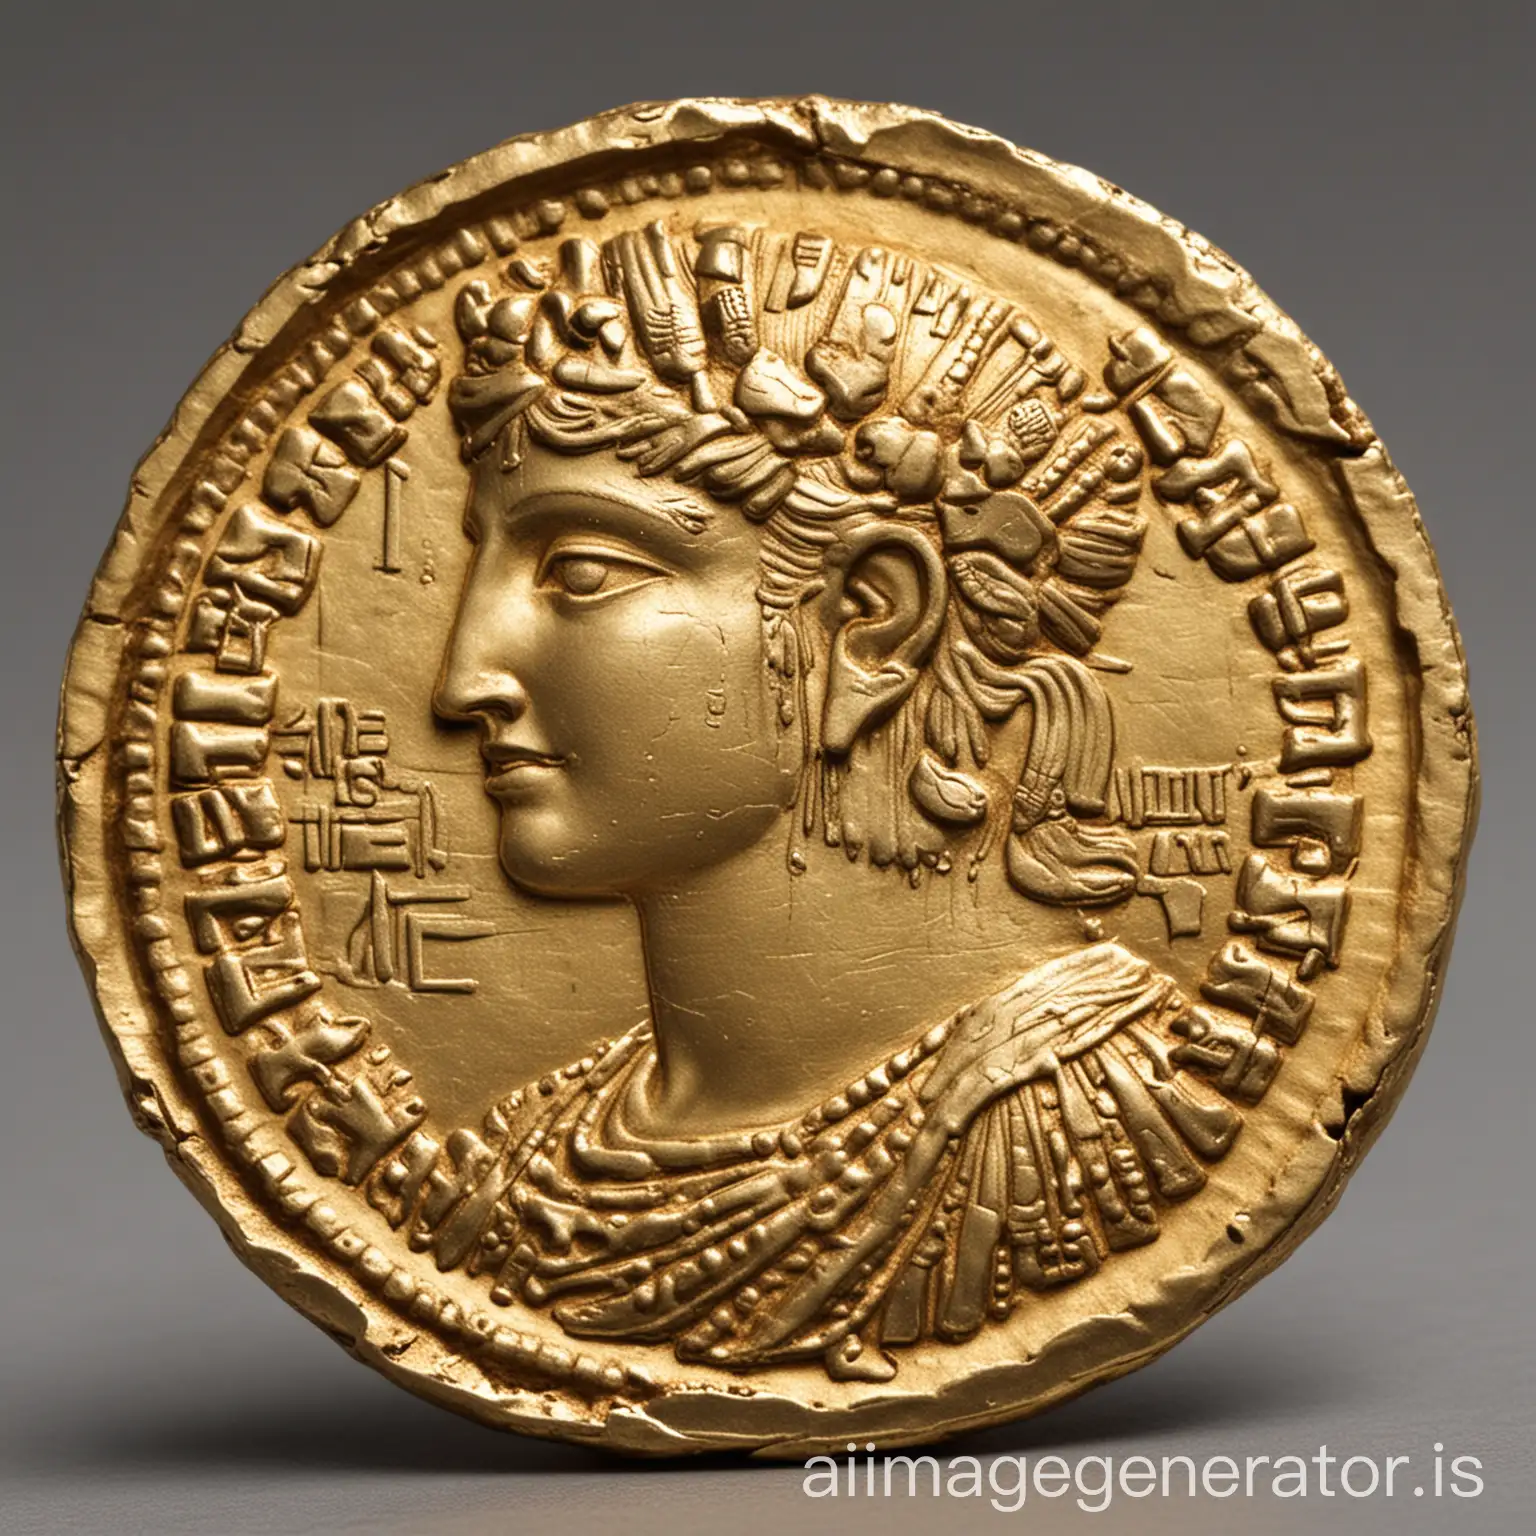 Antique-Gold-Coin-on-Velvet-Background